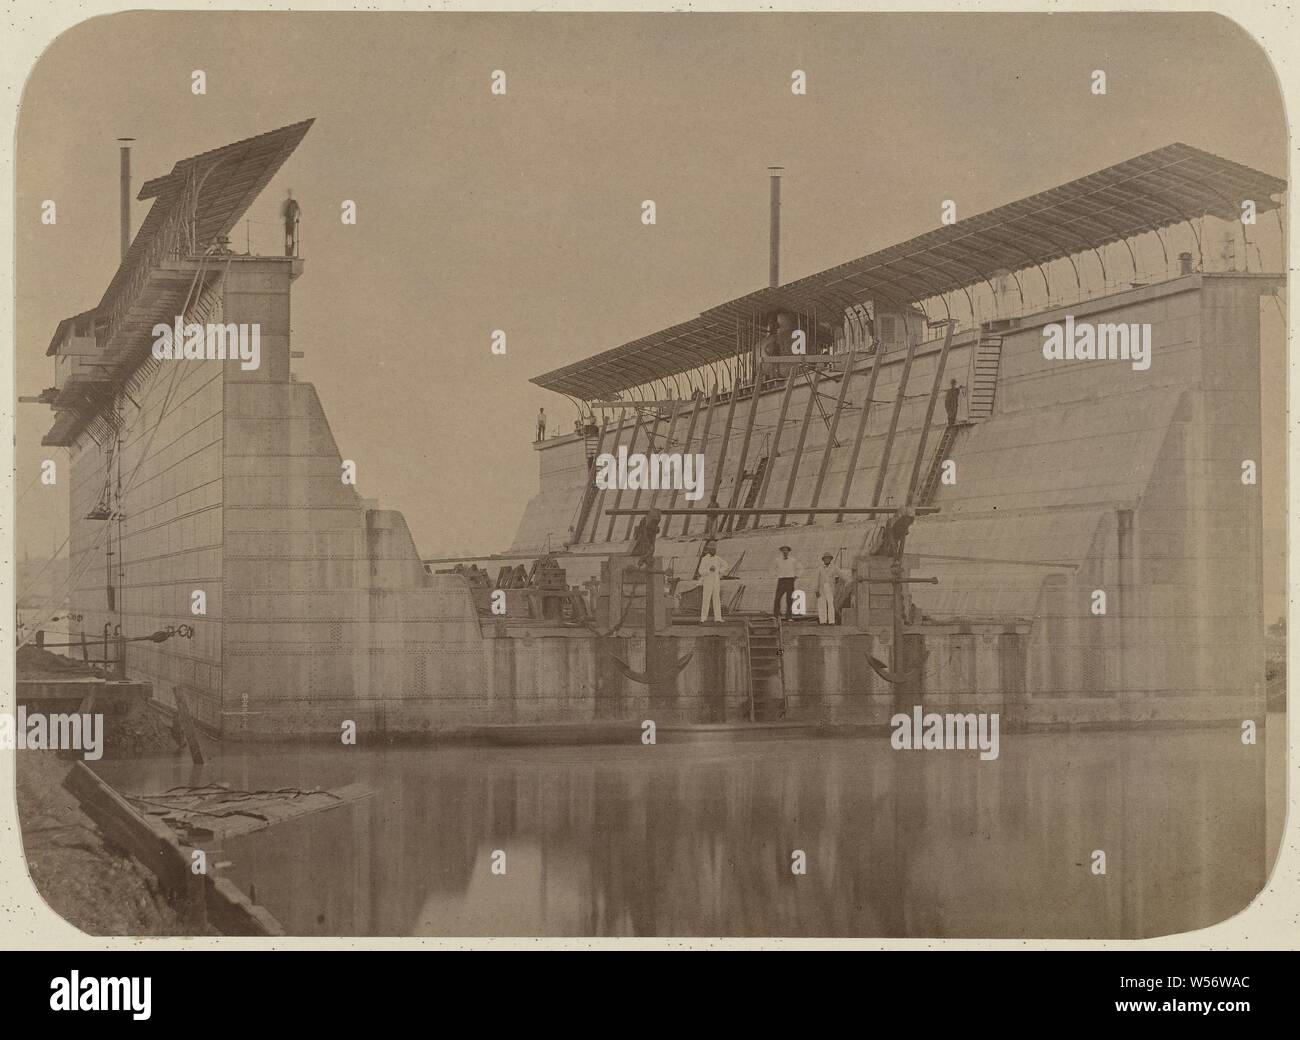 Schwimmende Trockendock, die Schwarz-weiß-Foto zeigt die schwimmende Trockendock auf der Insel Onrust in Surabaya mit einer Anzahl von Arbeitern an Bord, Niederländisch Ostindien, anonym, Java, 1877-1878, Papier, h 23,4 cm x W 32 cm Stockfoto